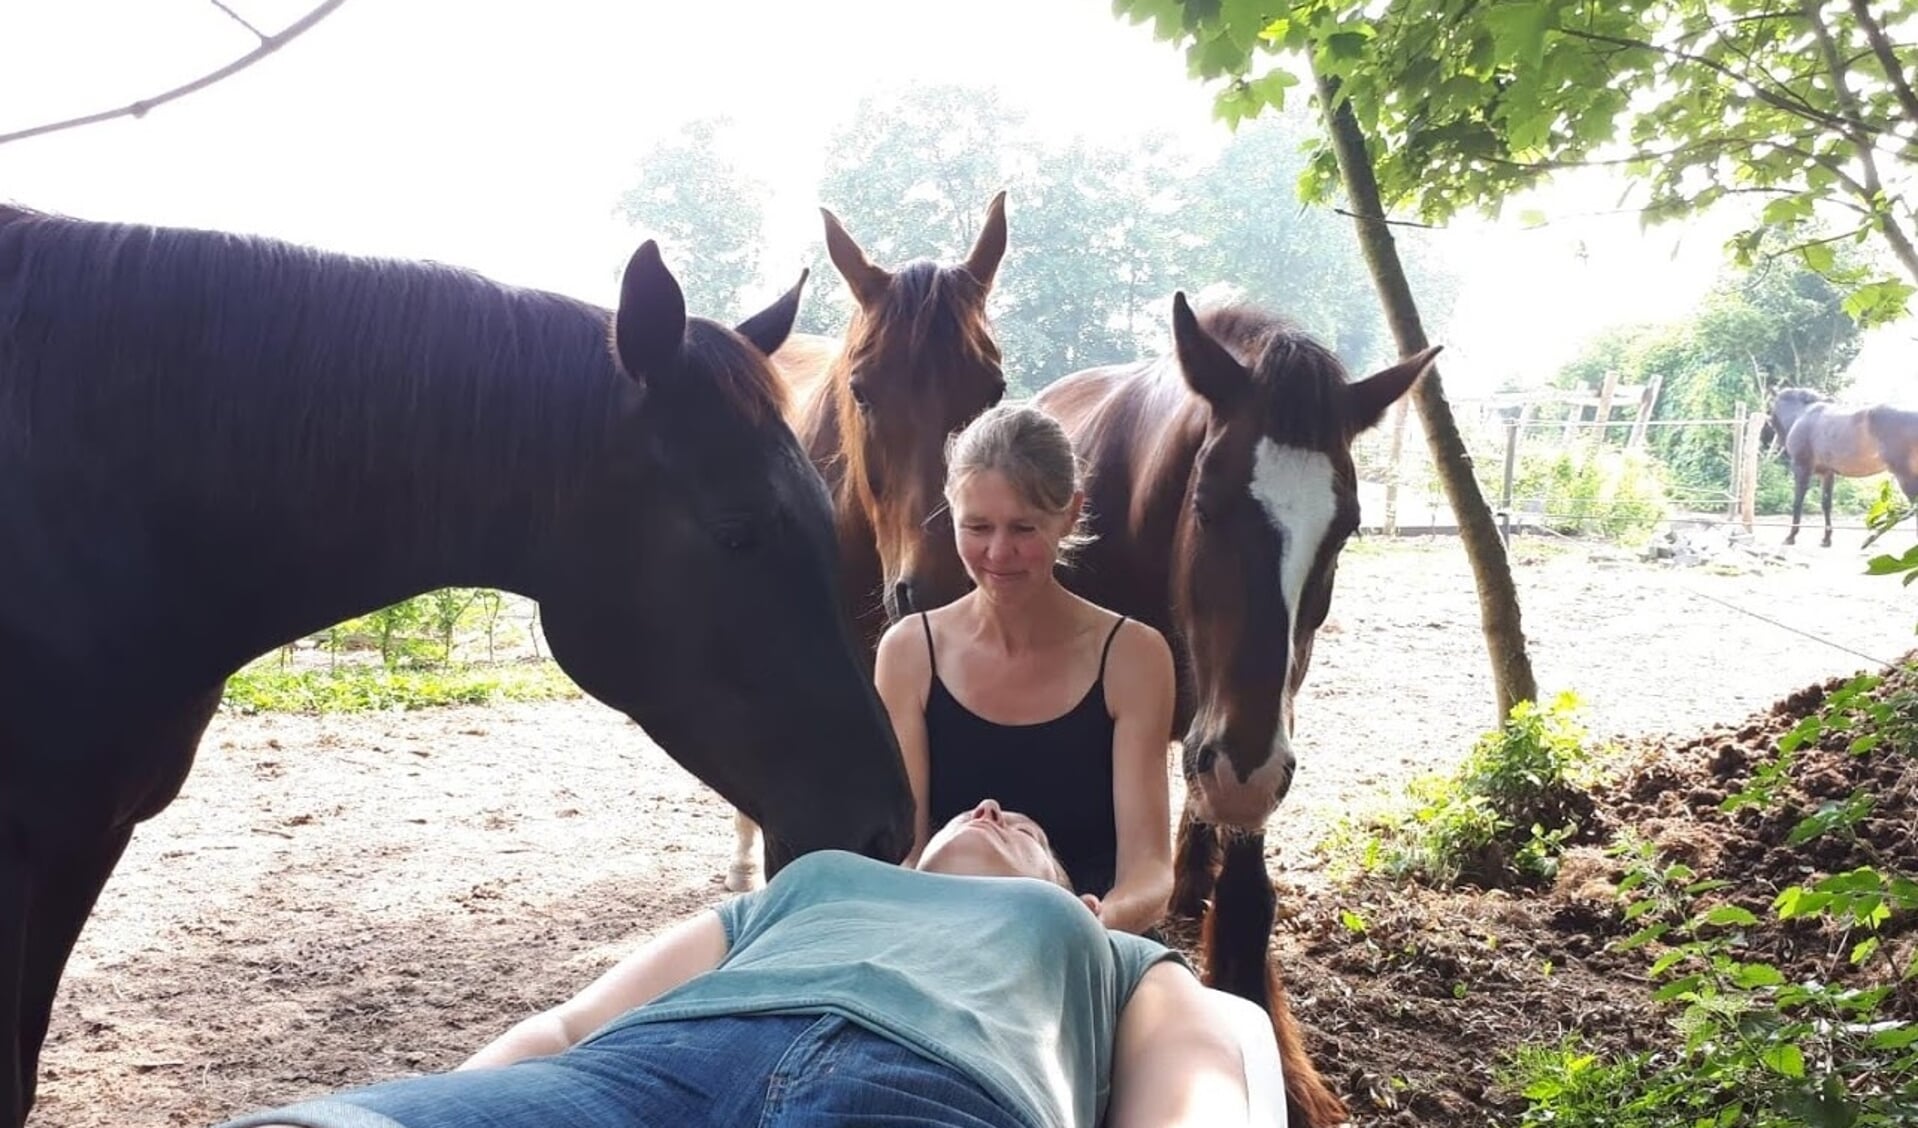 Chantal geeft op deze foto een Access Bars behandeling tussen de paarden. Dit is één van de verschillende methodes die ze gebruikt om ruiters te helpen.